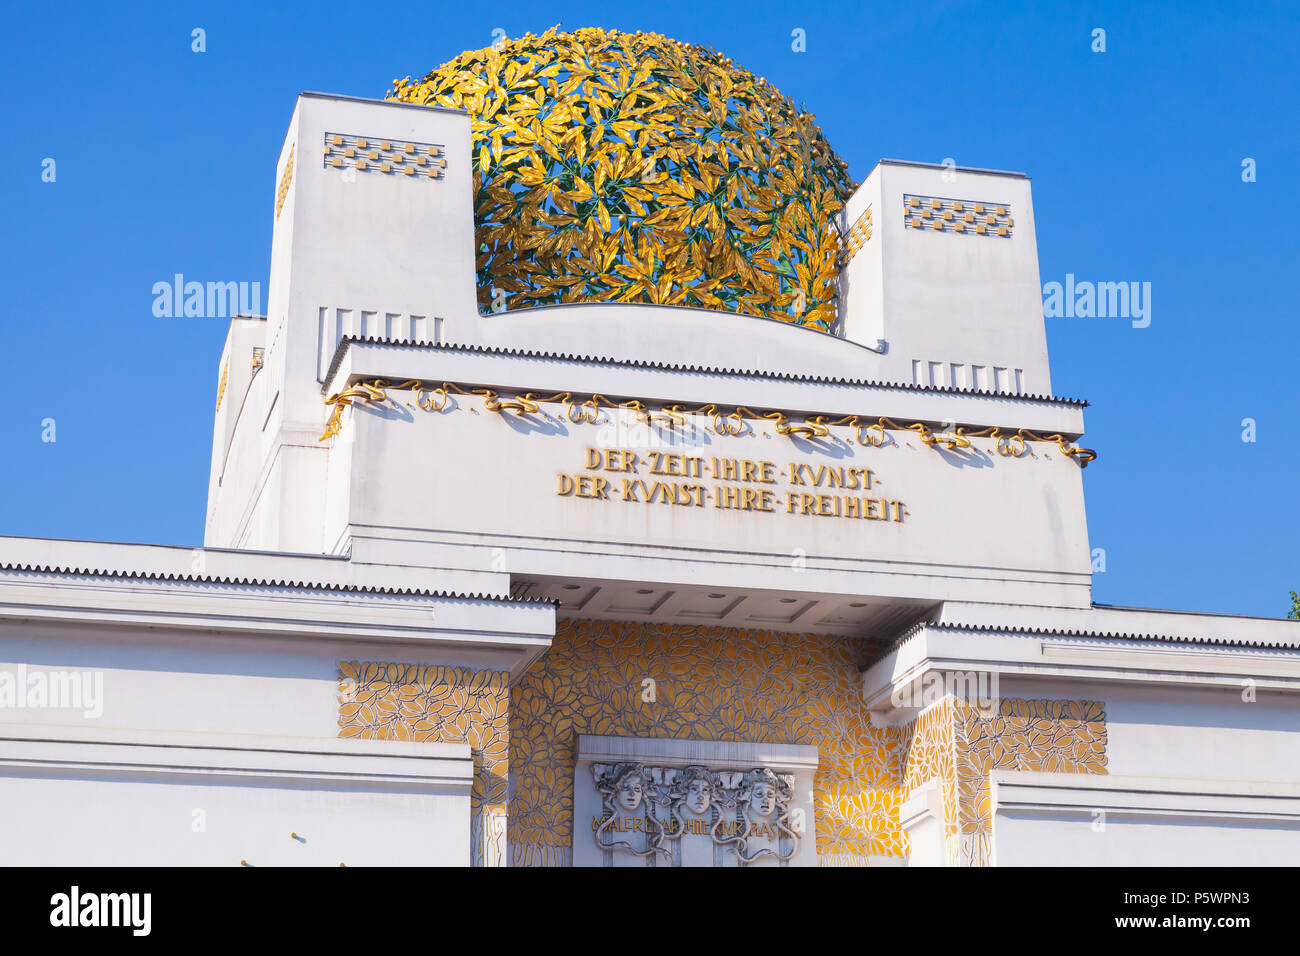 Vienne, Autriche - 4 novembre, 2015 : dôme doré de la Sécession de Vienne, il a été construit en 1897 par Joseph Maria Olbrich. Banque D'Images